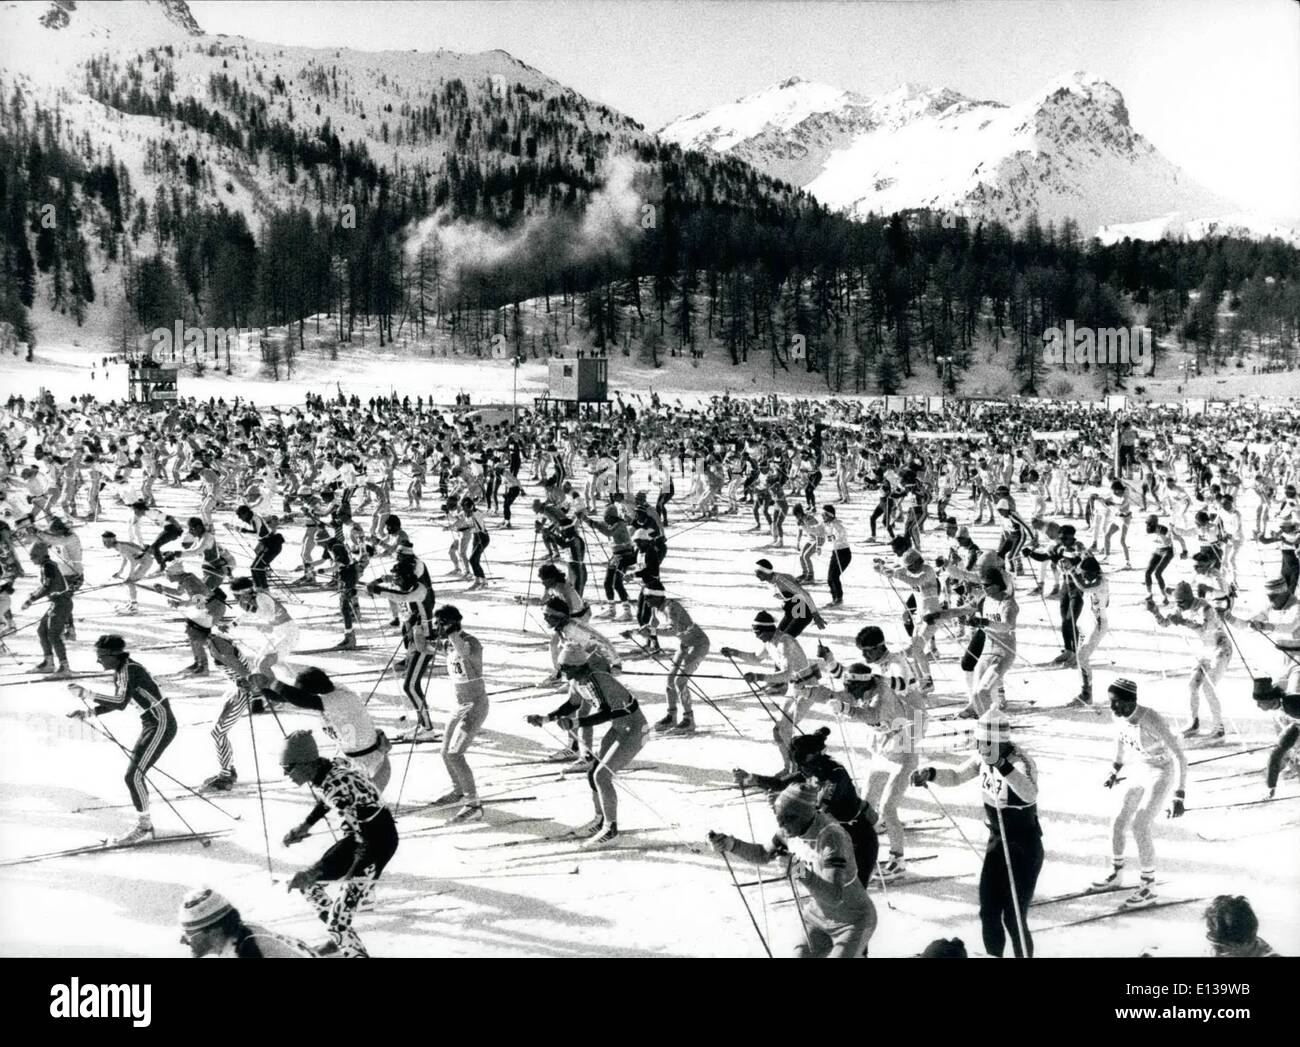 29. Februar 2012 - 11.000 in der Cross Country Skiing. Auf der 22. beteiligte Engadin Skimarathon für Amateure in Graubünden ca. 11.000 Läufer. Unser Bild zeigt die Menge auf dem Weg. Keystone Press Zürich 12.3.90 Stockfoto